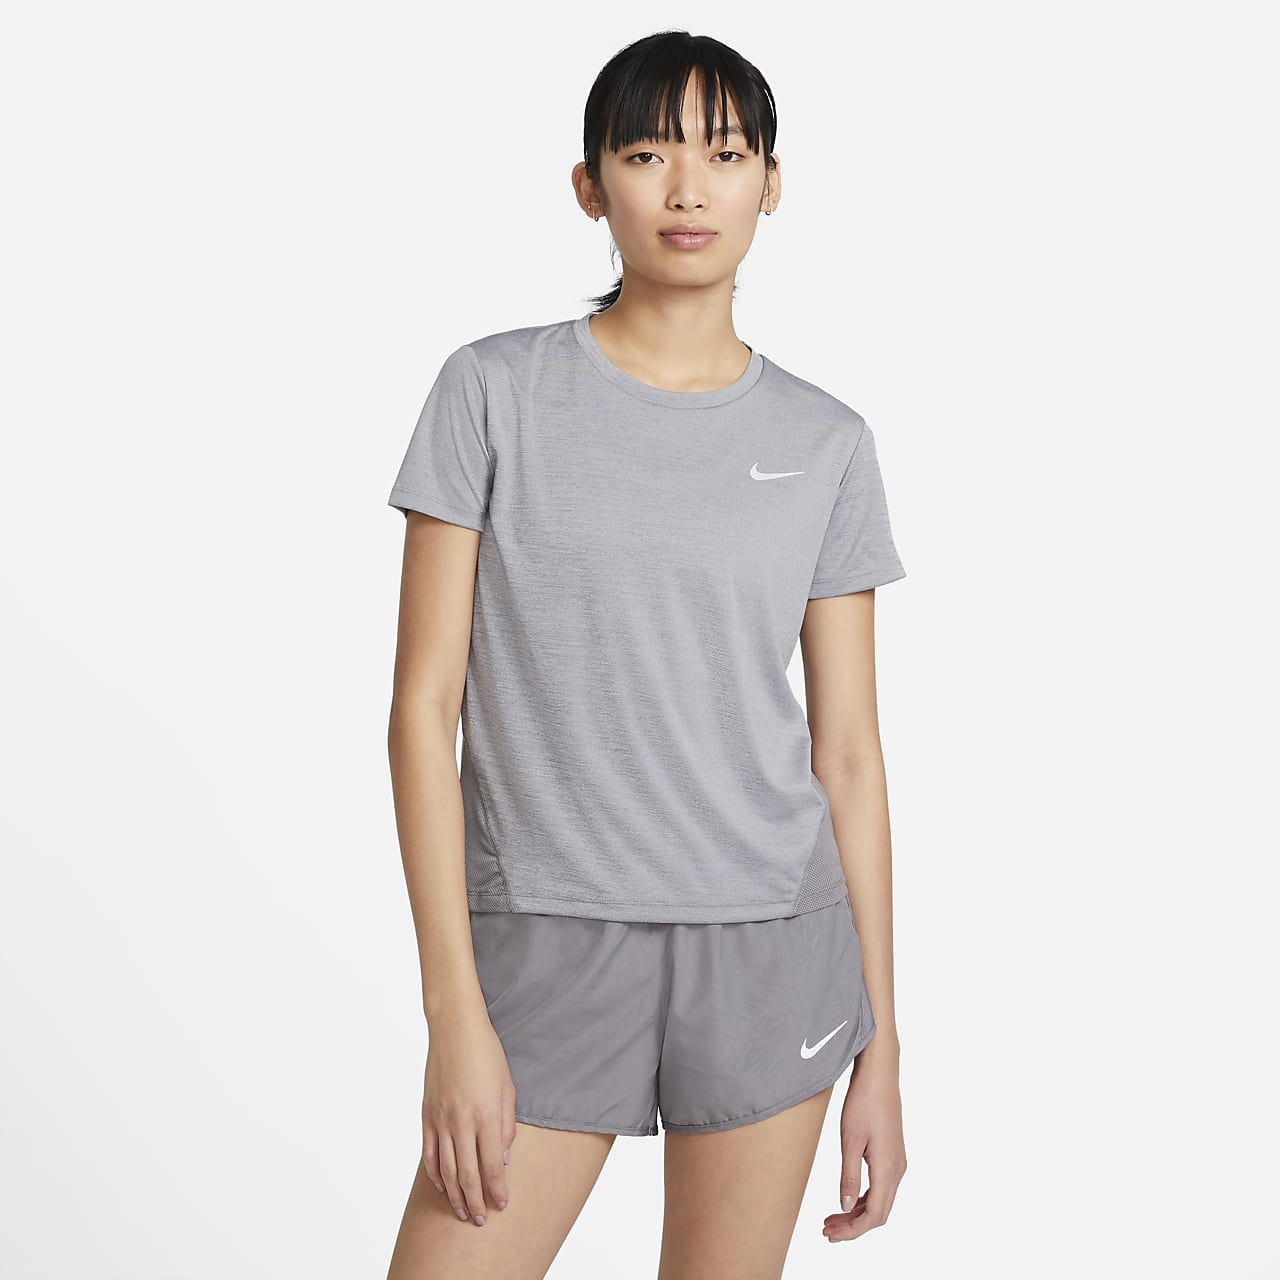 women's short sleeve running top